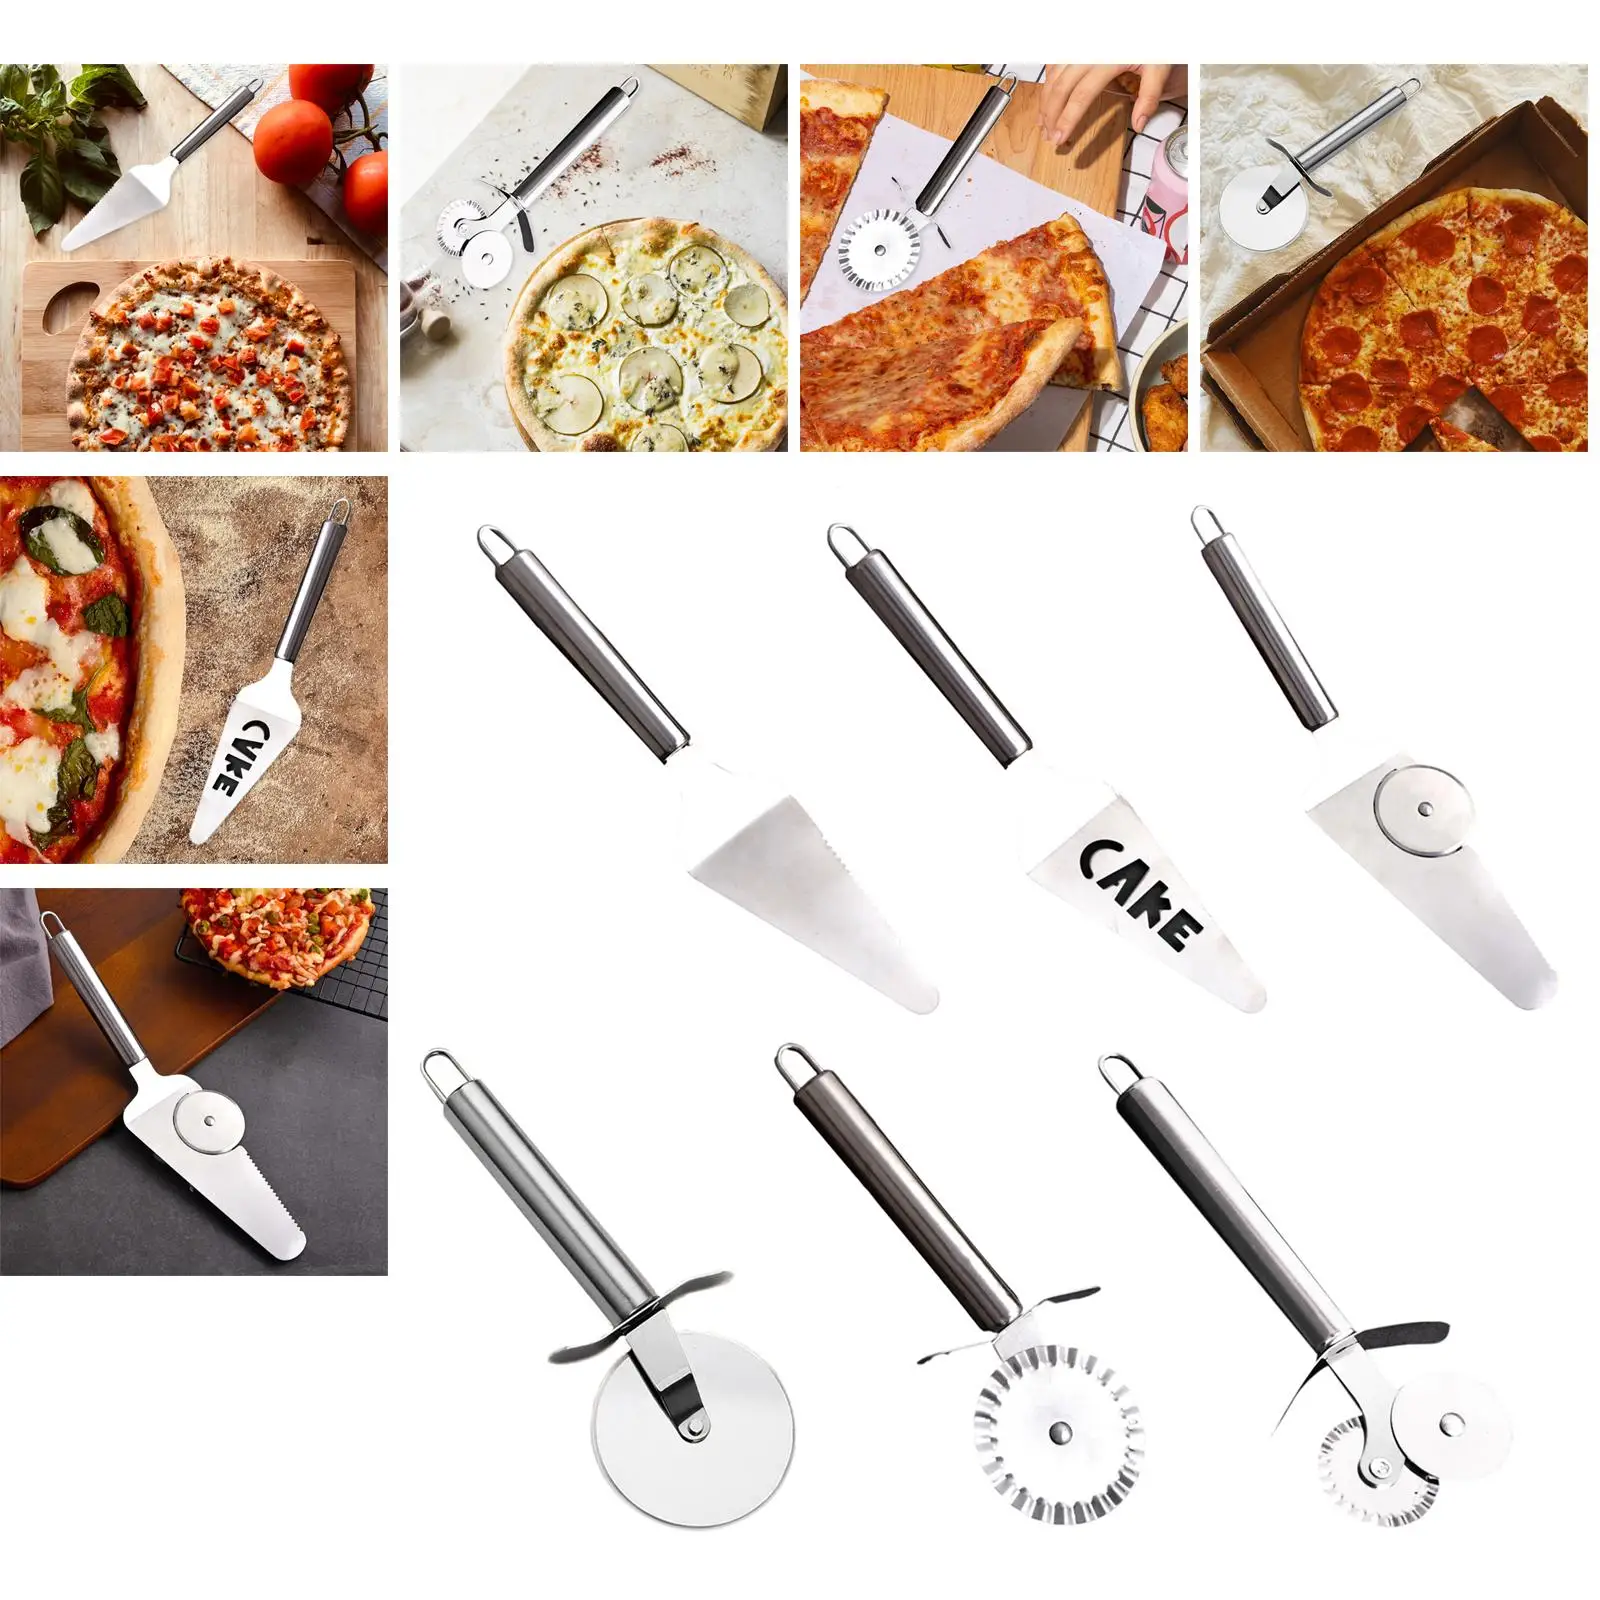 profesional multifuncional aleación de zinc pastelería pizza cortador de rueda suministros de cocina Cortador de rueda 